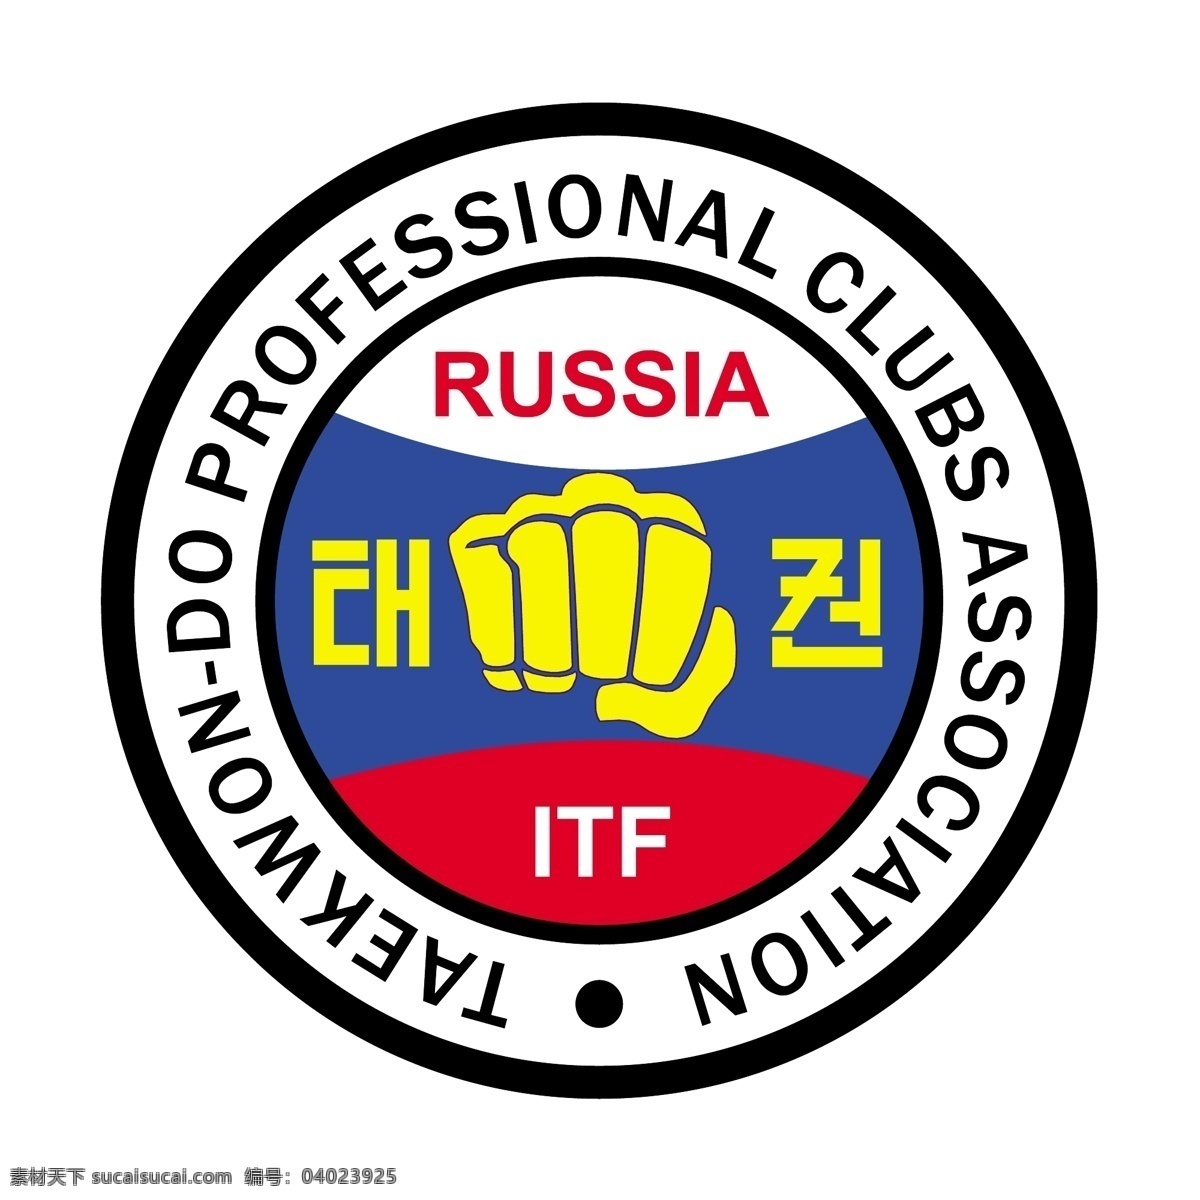 跆拳道 专业 俱乐部 协会 俄罗斯 免费 标志 psd源文件 logo设计